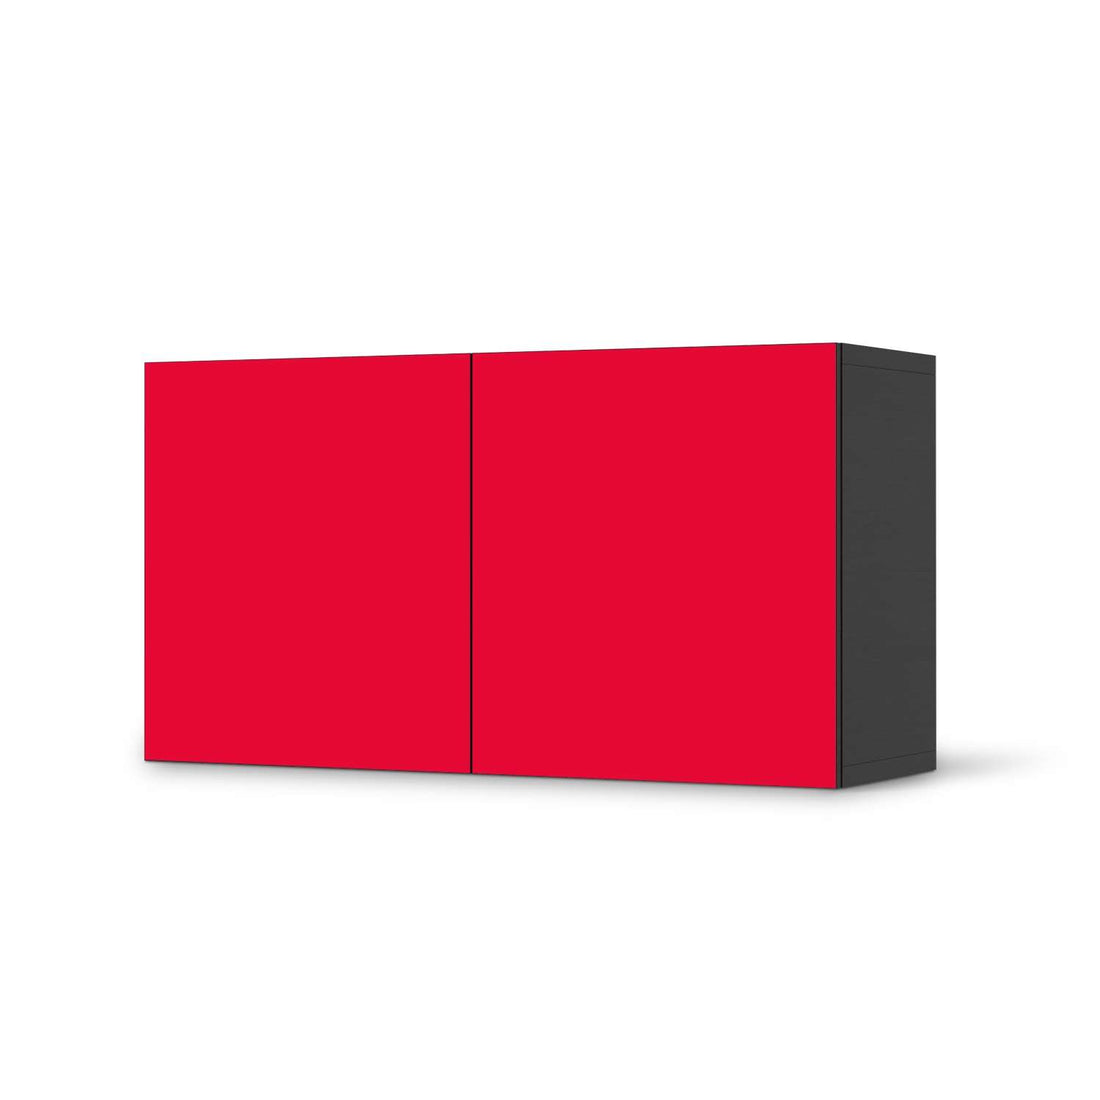 Folie für Möbel Rot Light - IKEA Besta Regal Quer 2 Türen - schwarz